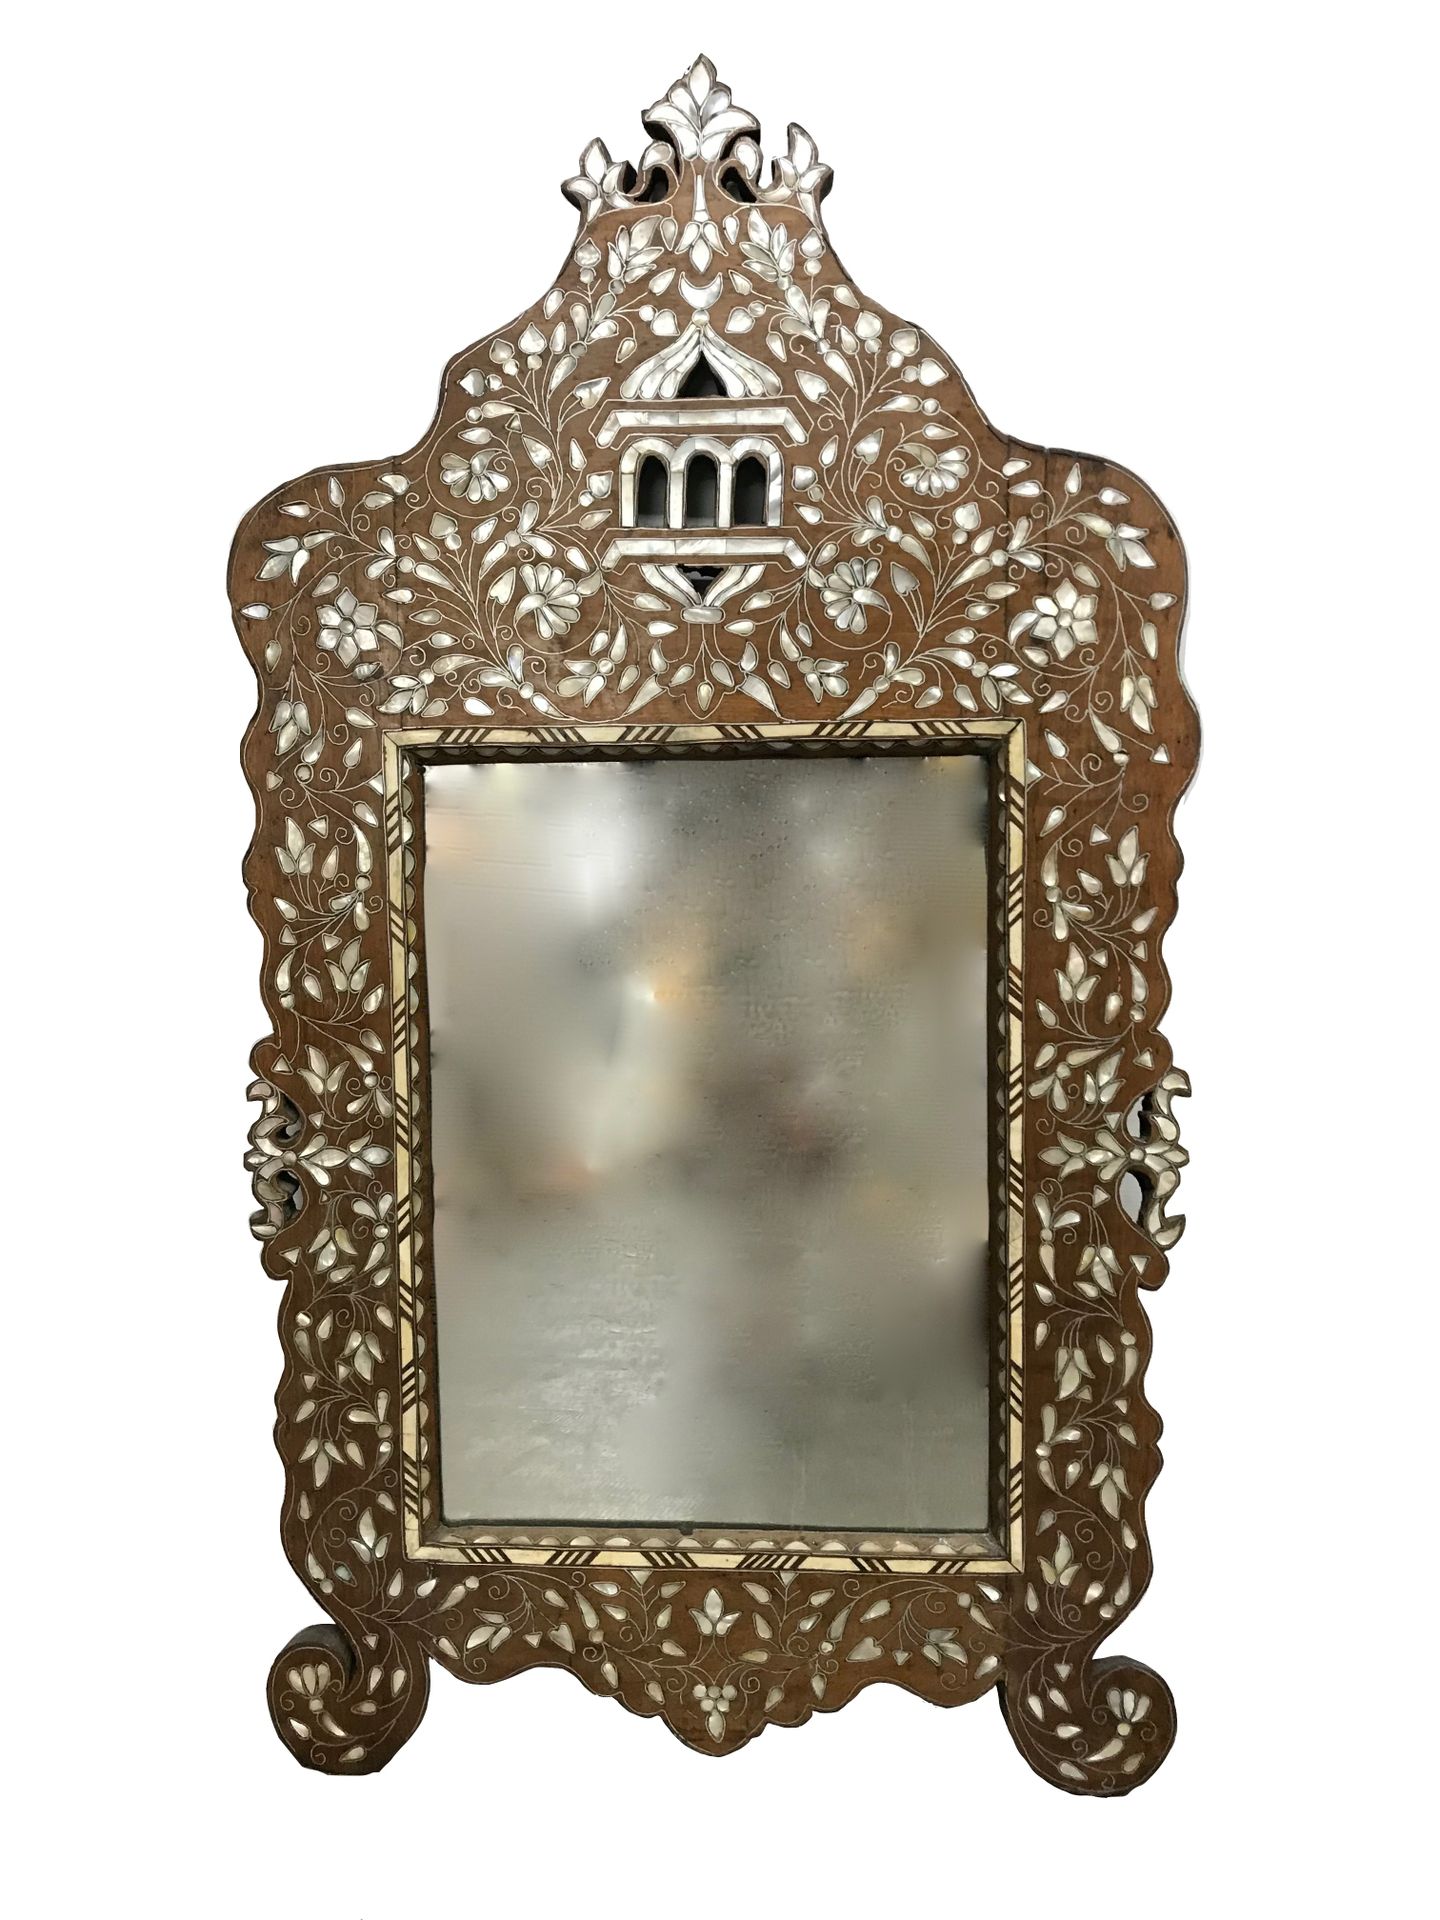 IRAN Spiegel mit Perlmutt-Intarsien

H. 114 cm - B. 62 cm